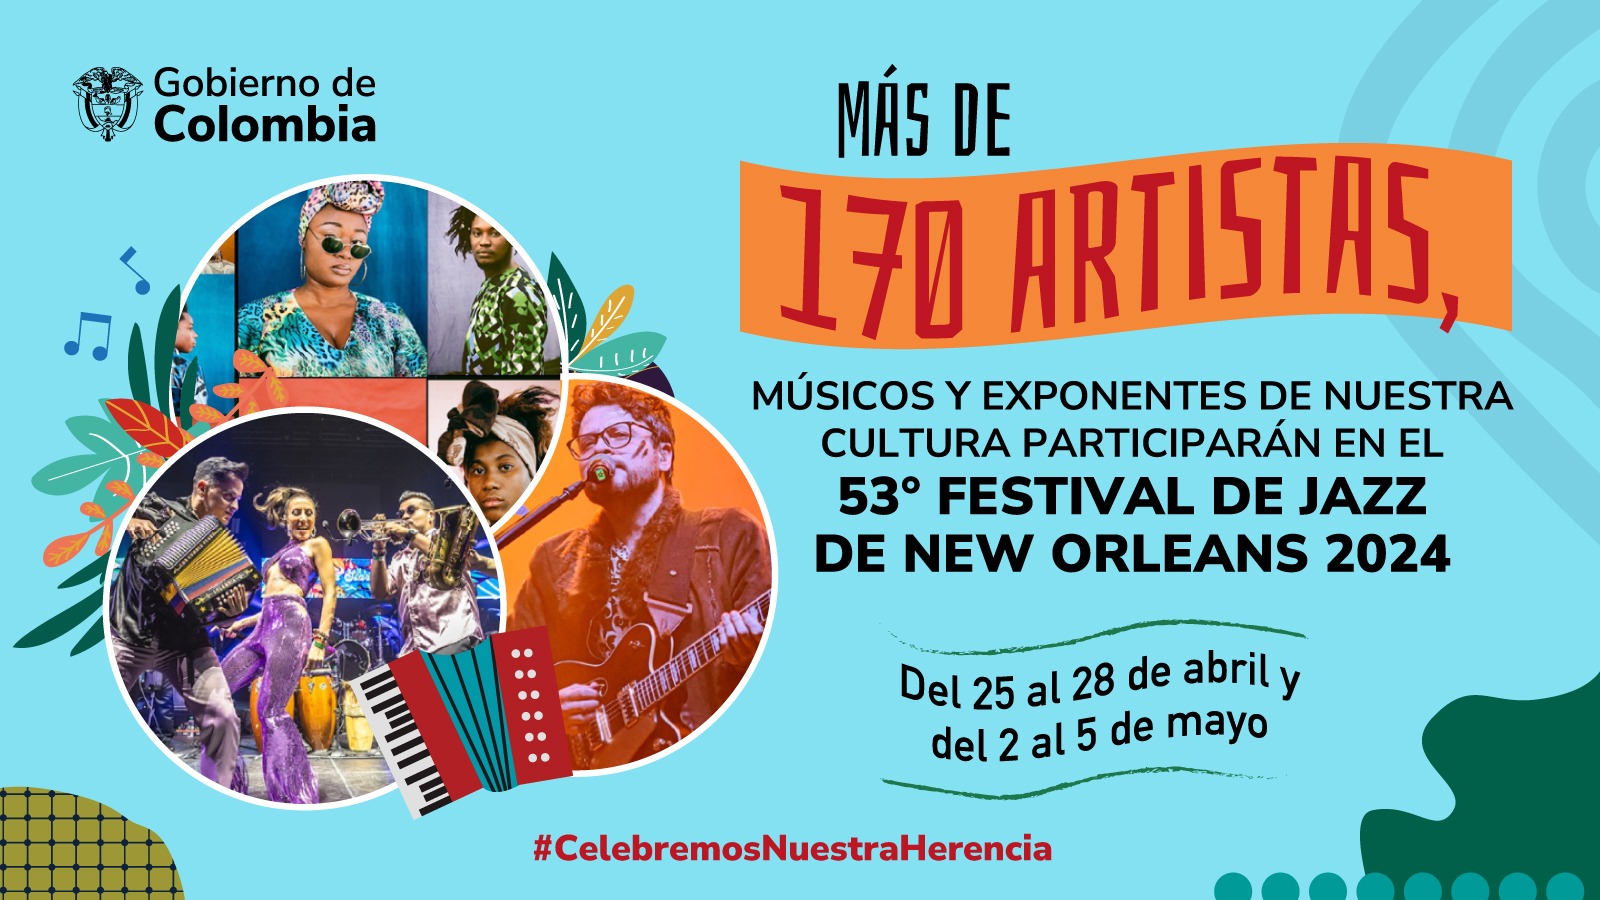 El Festival de Jazz de Nueva Orleans, dará lugar a participaciones de artistas colombianos para mostrar más de la diversidad cultural de Colombia